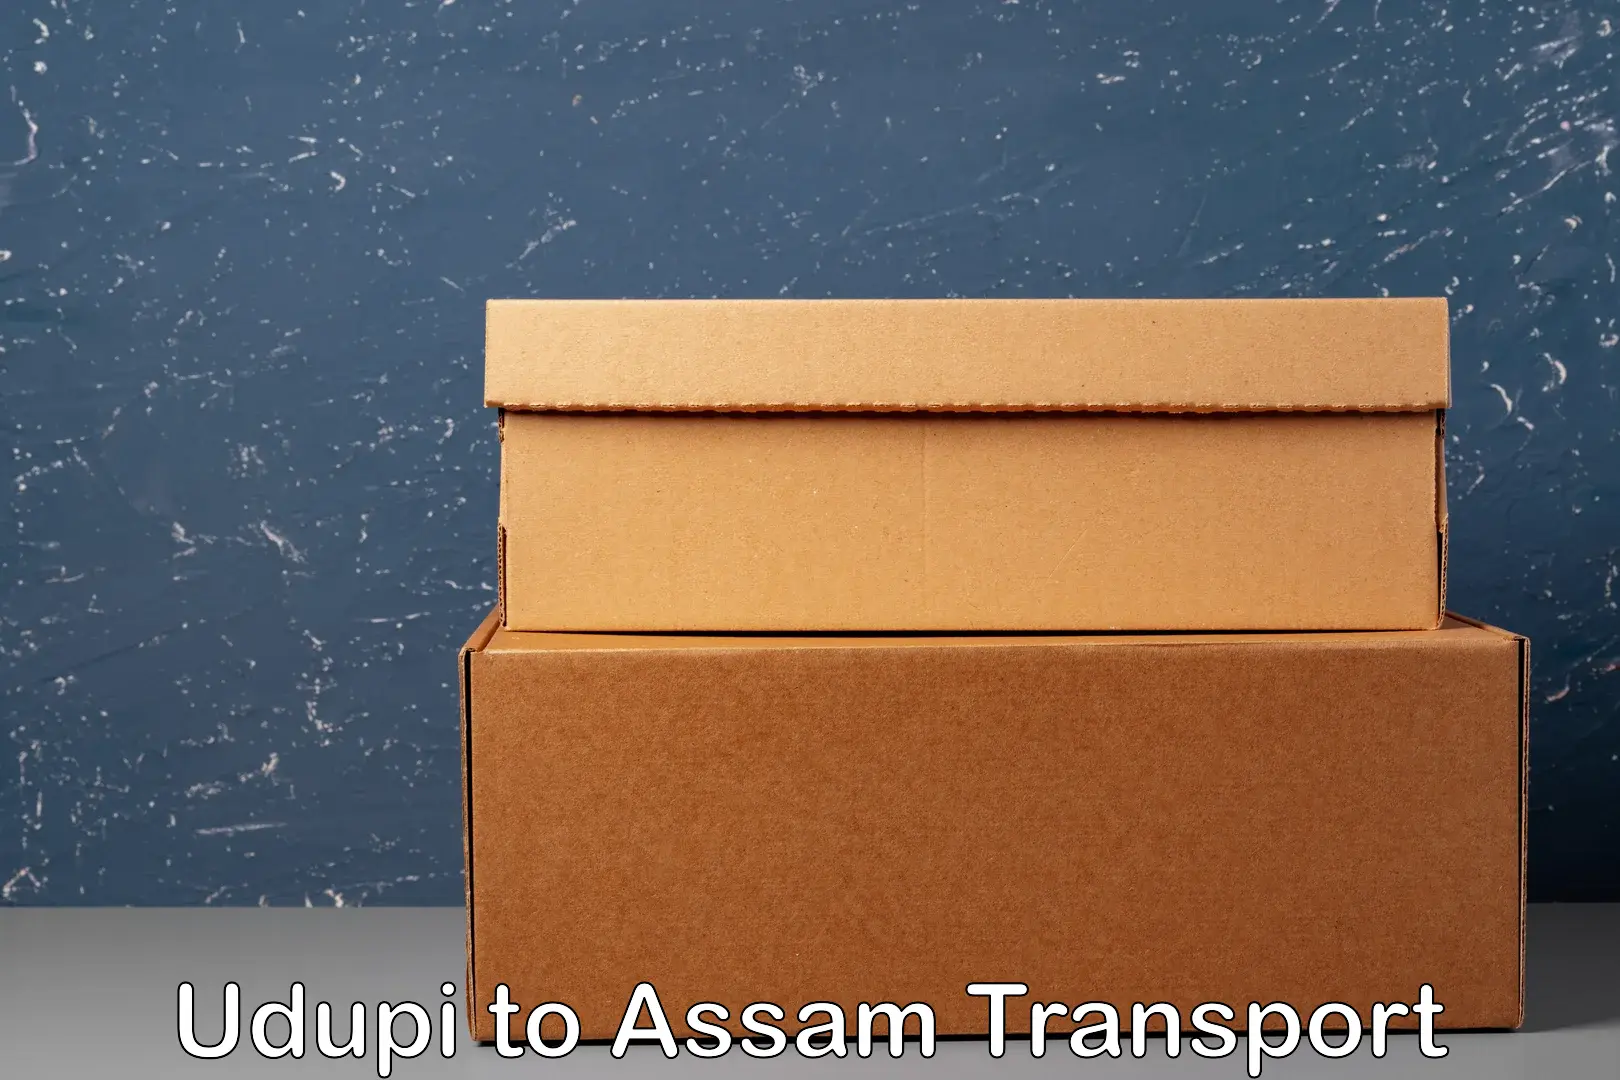 Express transport services Udupi to Assam